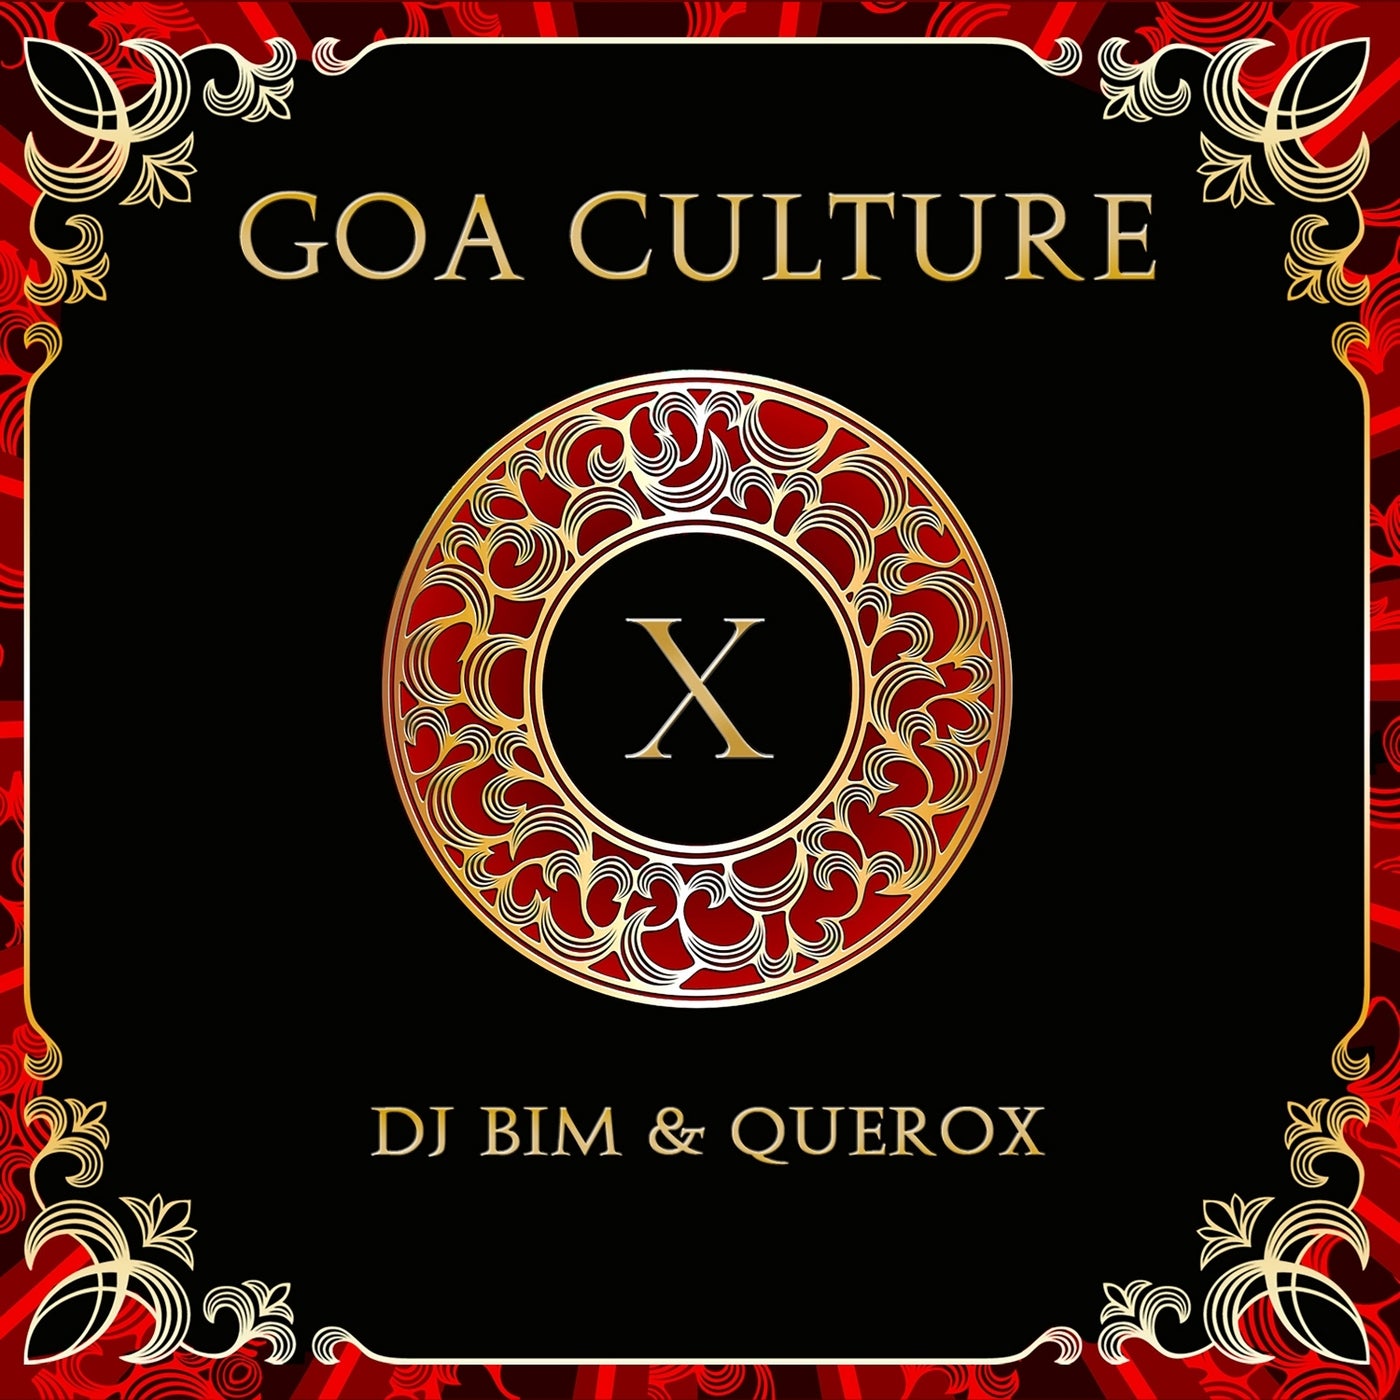 Goa Culture, Vol. 10